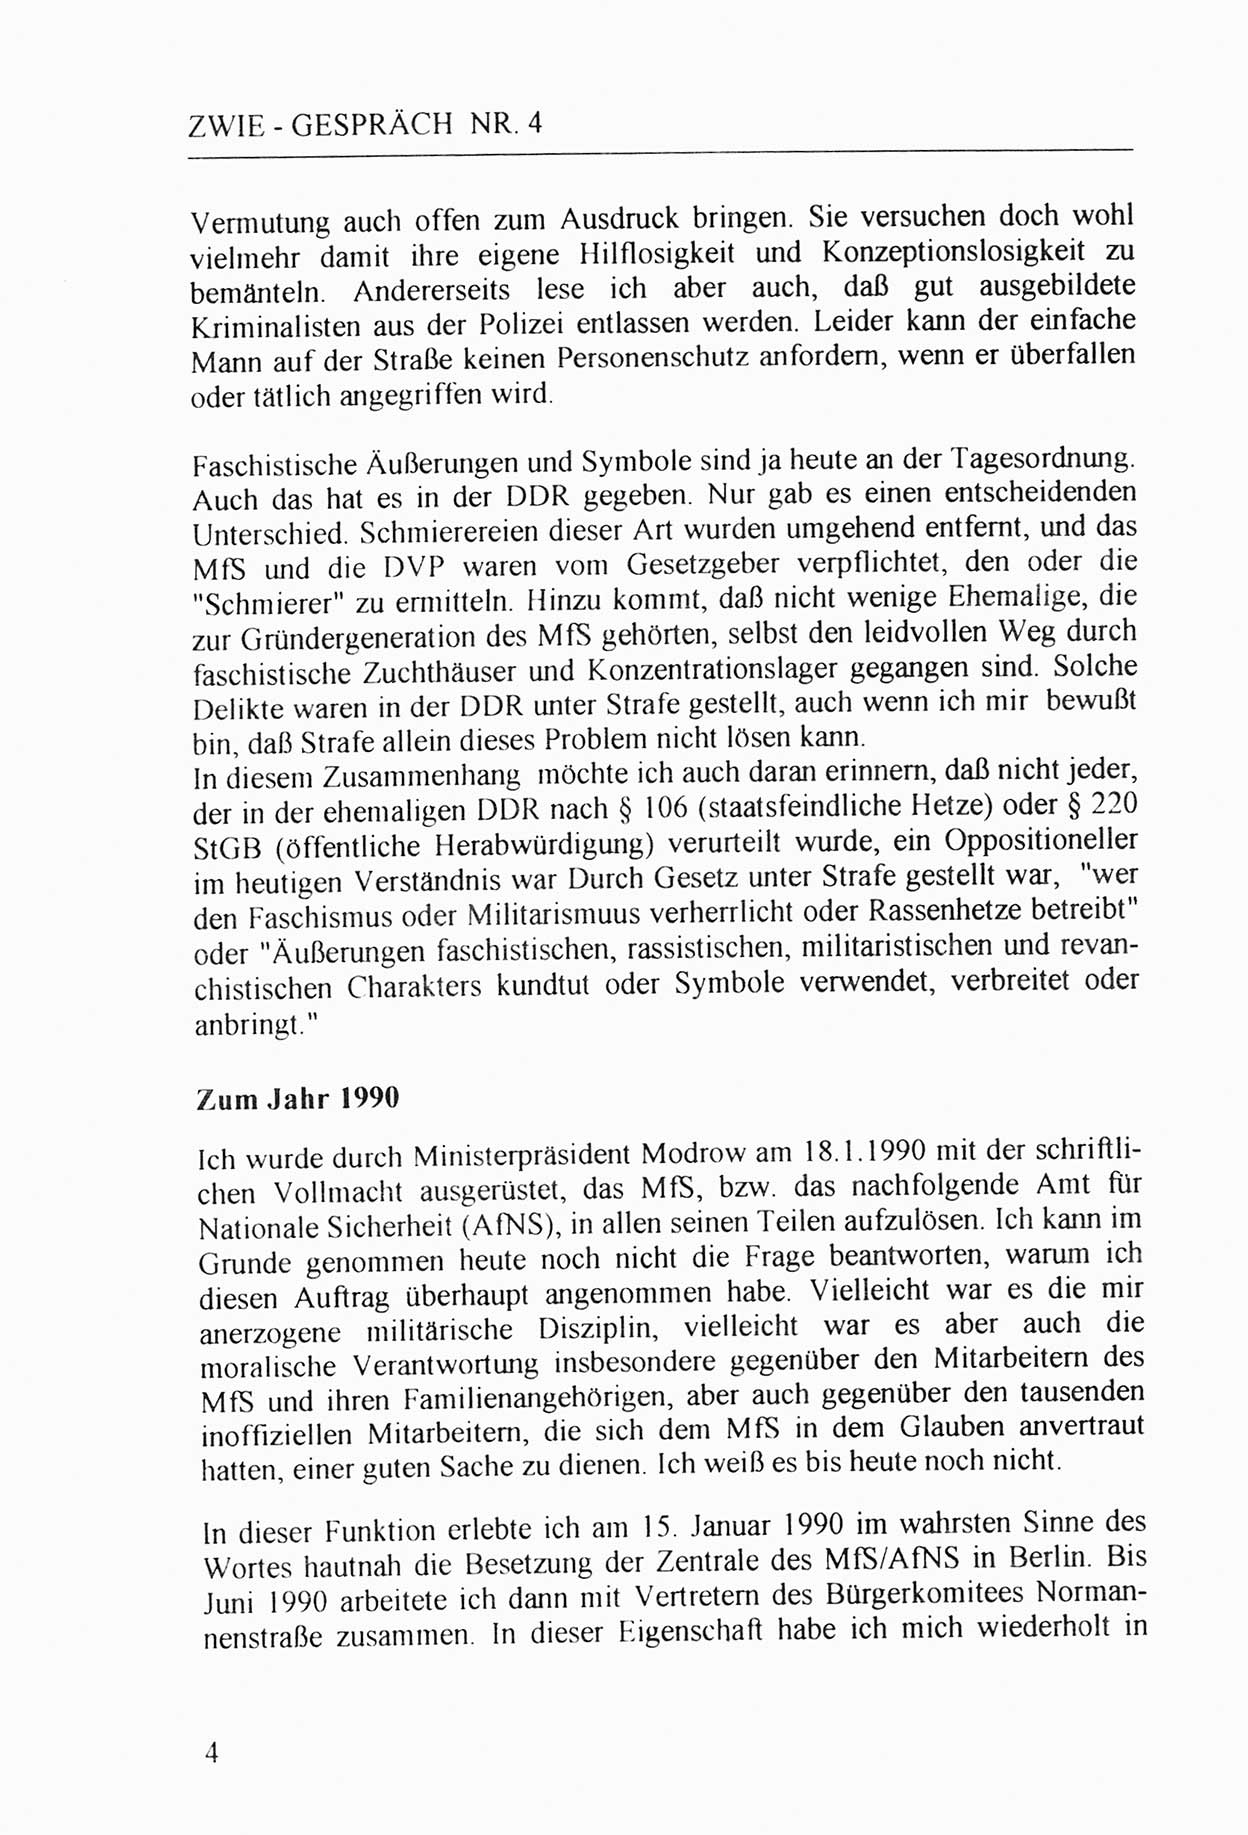 Zwie-Gespräch, Beiträge zur Aufarbeitung der Stasi-Vergangenheit [Deutsche Demokratische Republik (DDR)], Ausgabe Nr. 4, Berlin 1991, Seite 4 (Zwie-Gespr. Ausg. 4 1991, S. 4)